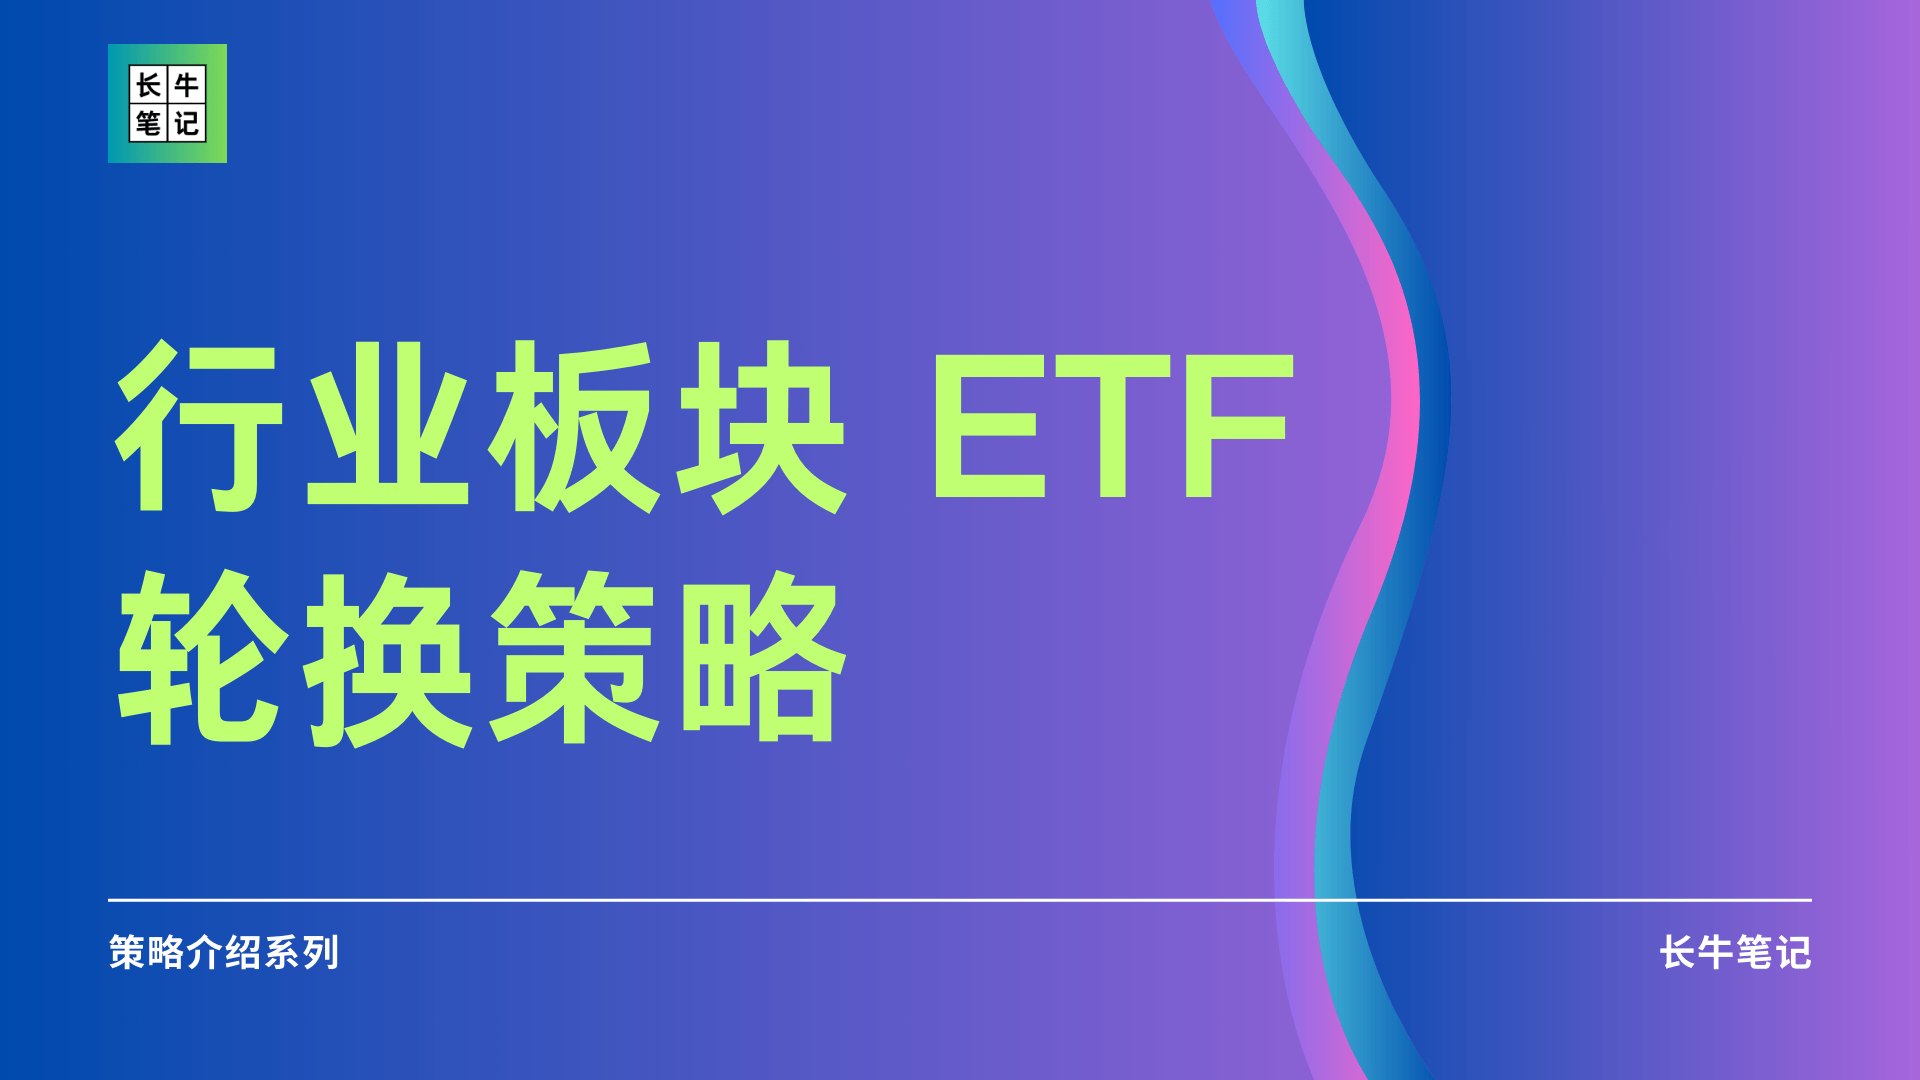 行业板块 ETF 轮换策略